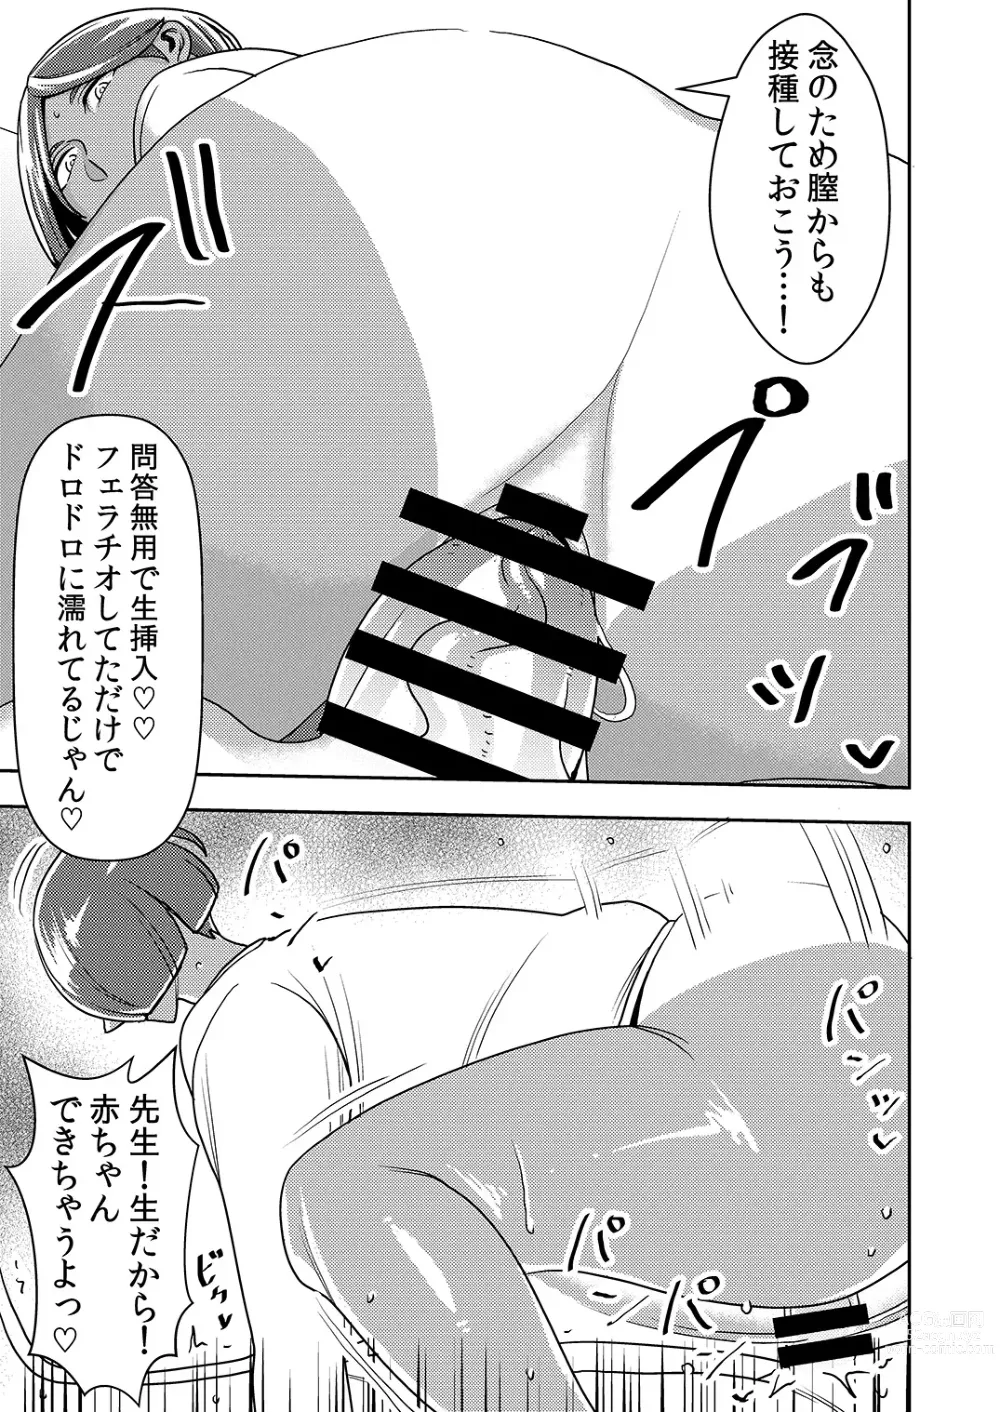 Page 22 of doujinshi Dekakute Eroi Boku no Imouto 5